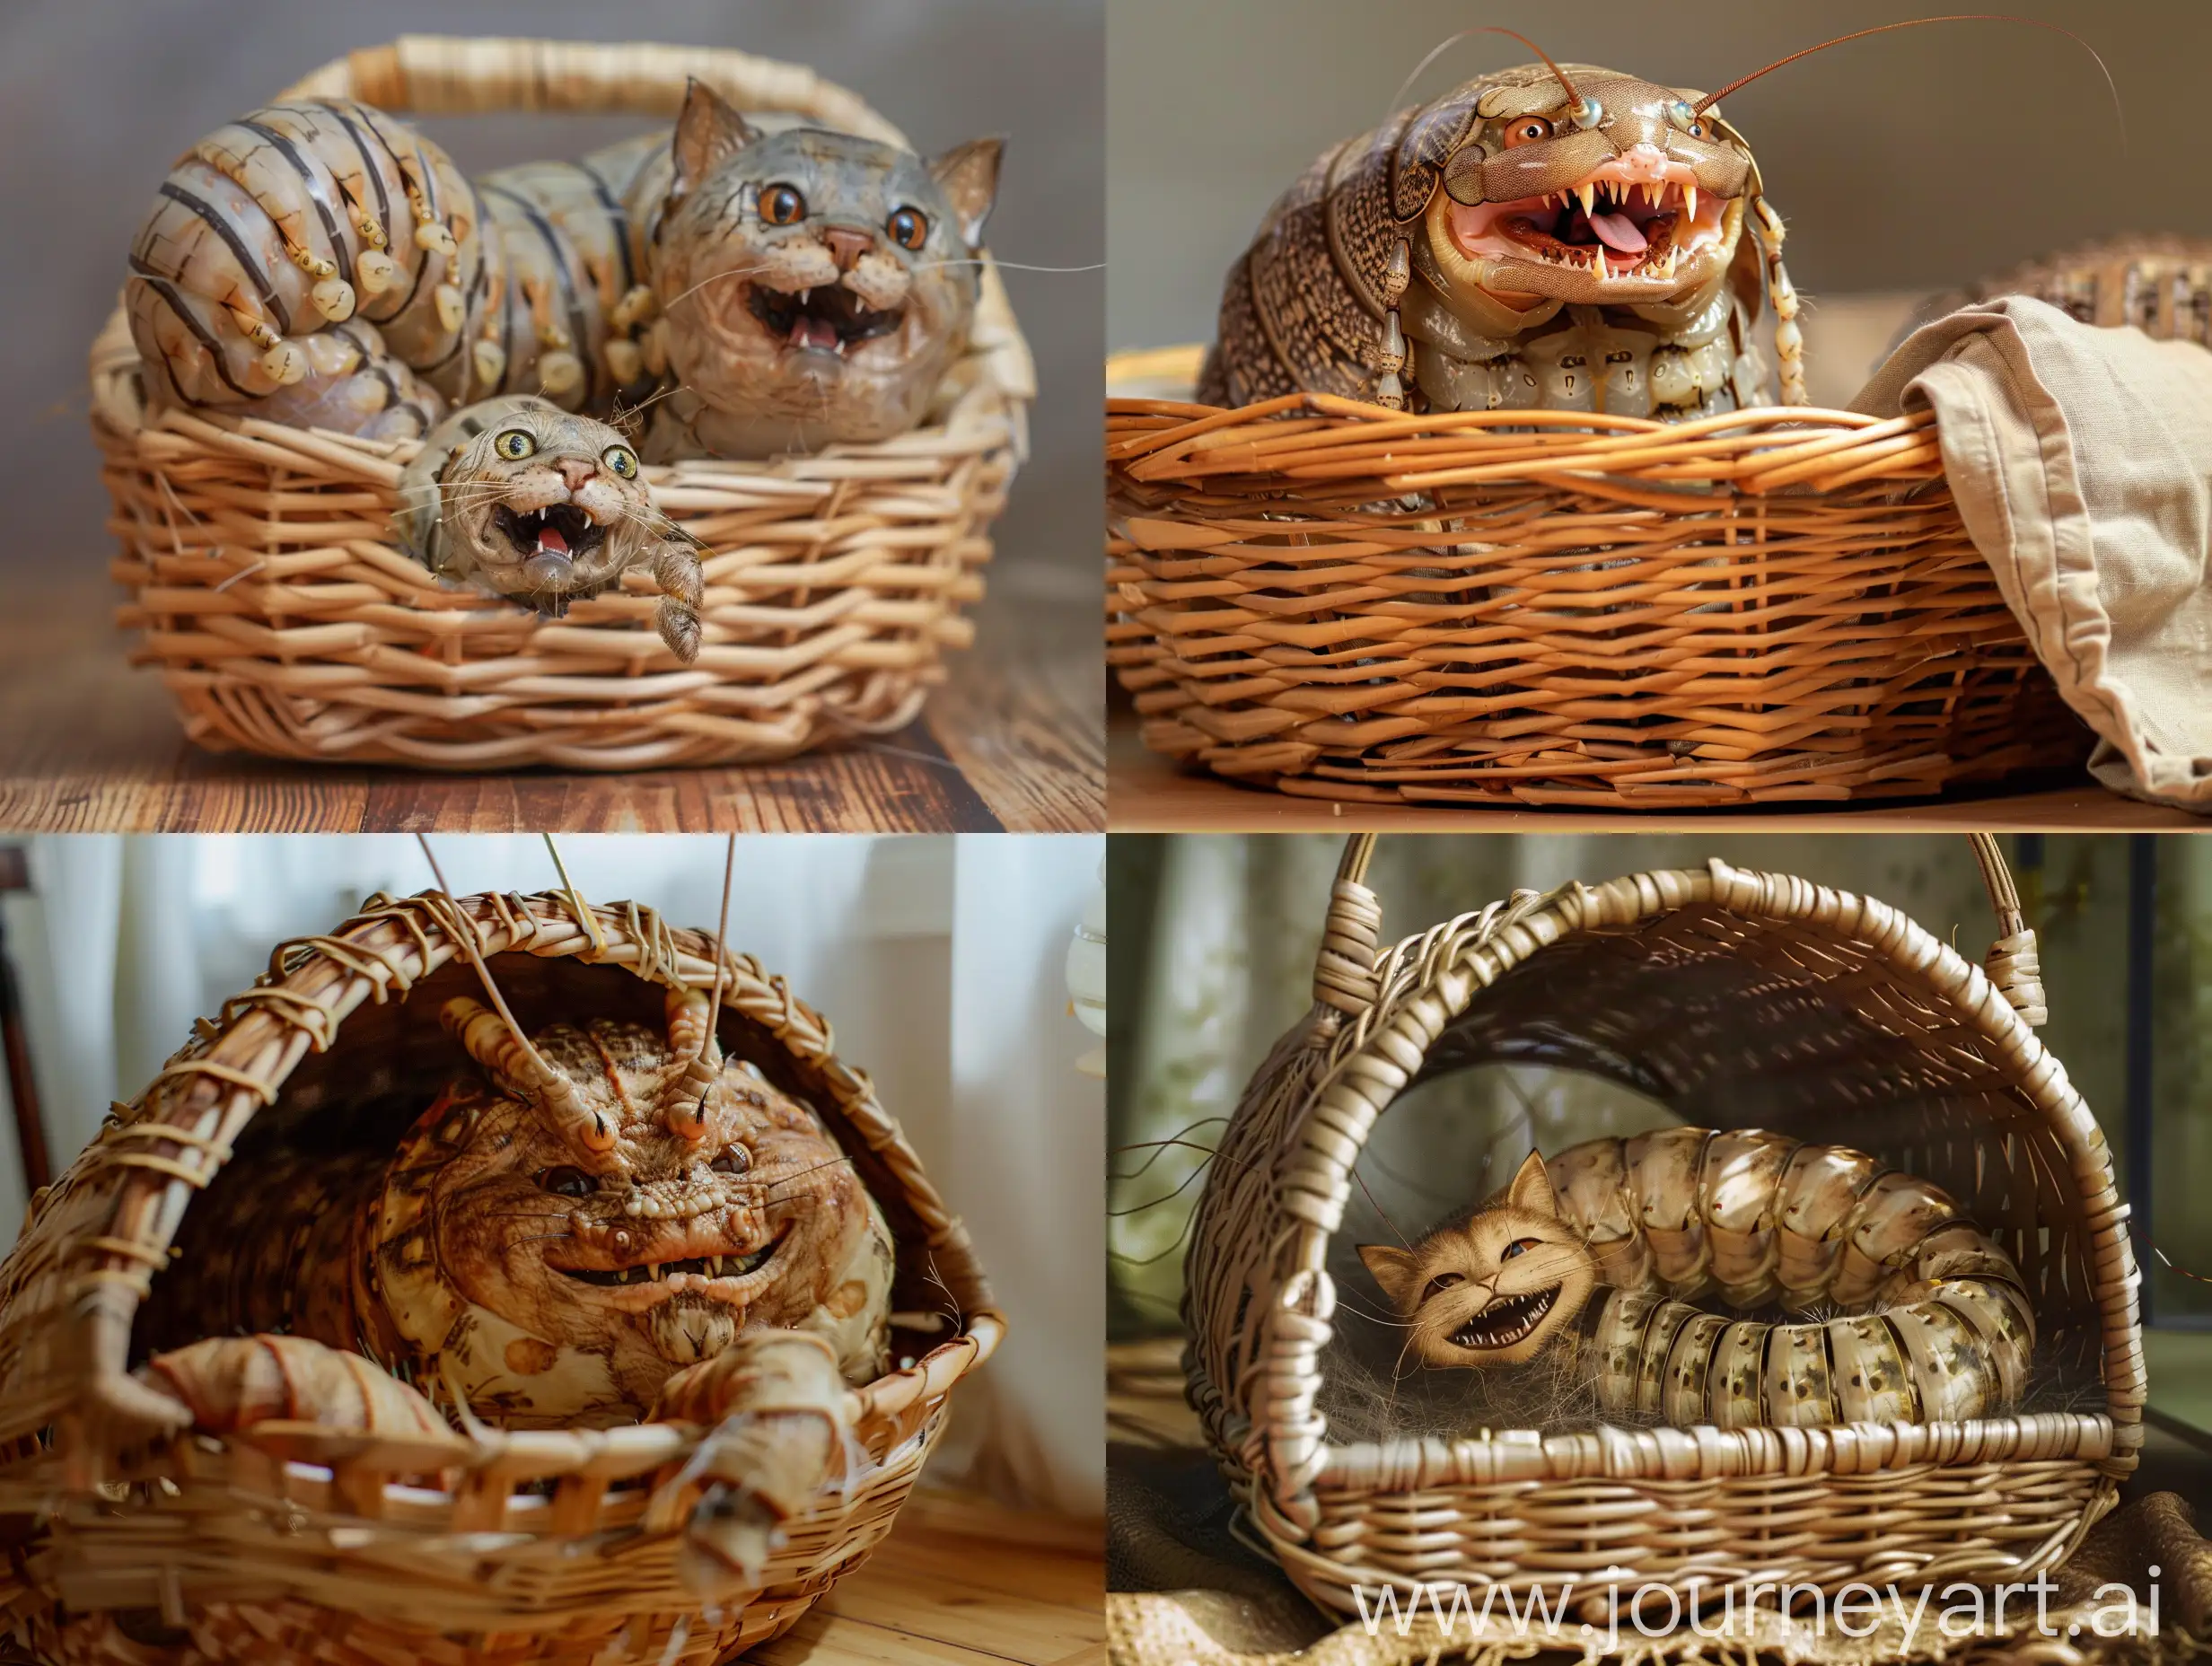 Giant-Silkworm-Cat-Smiling-in-Wicker-Basket